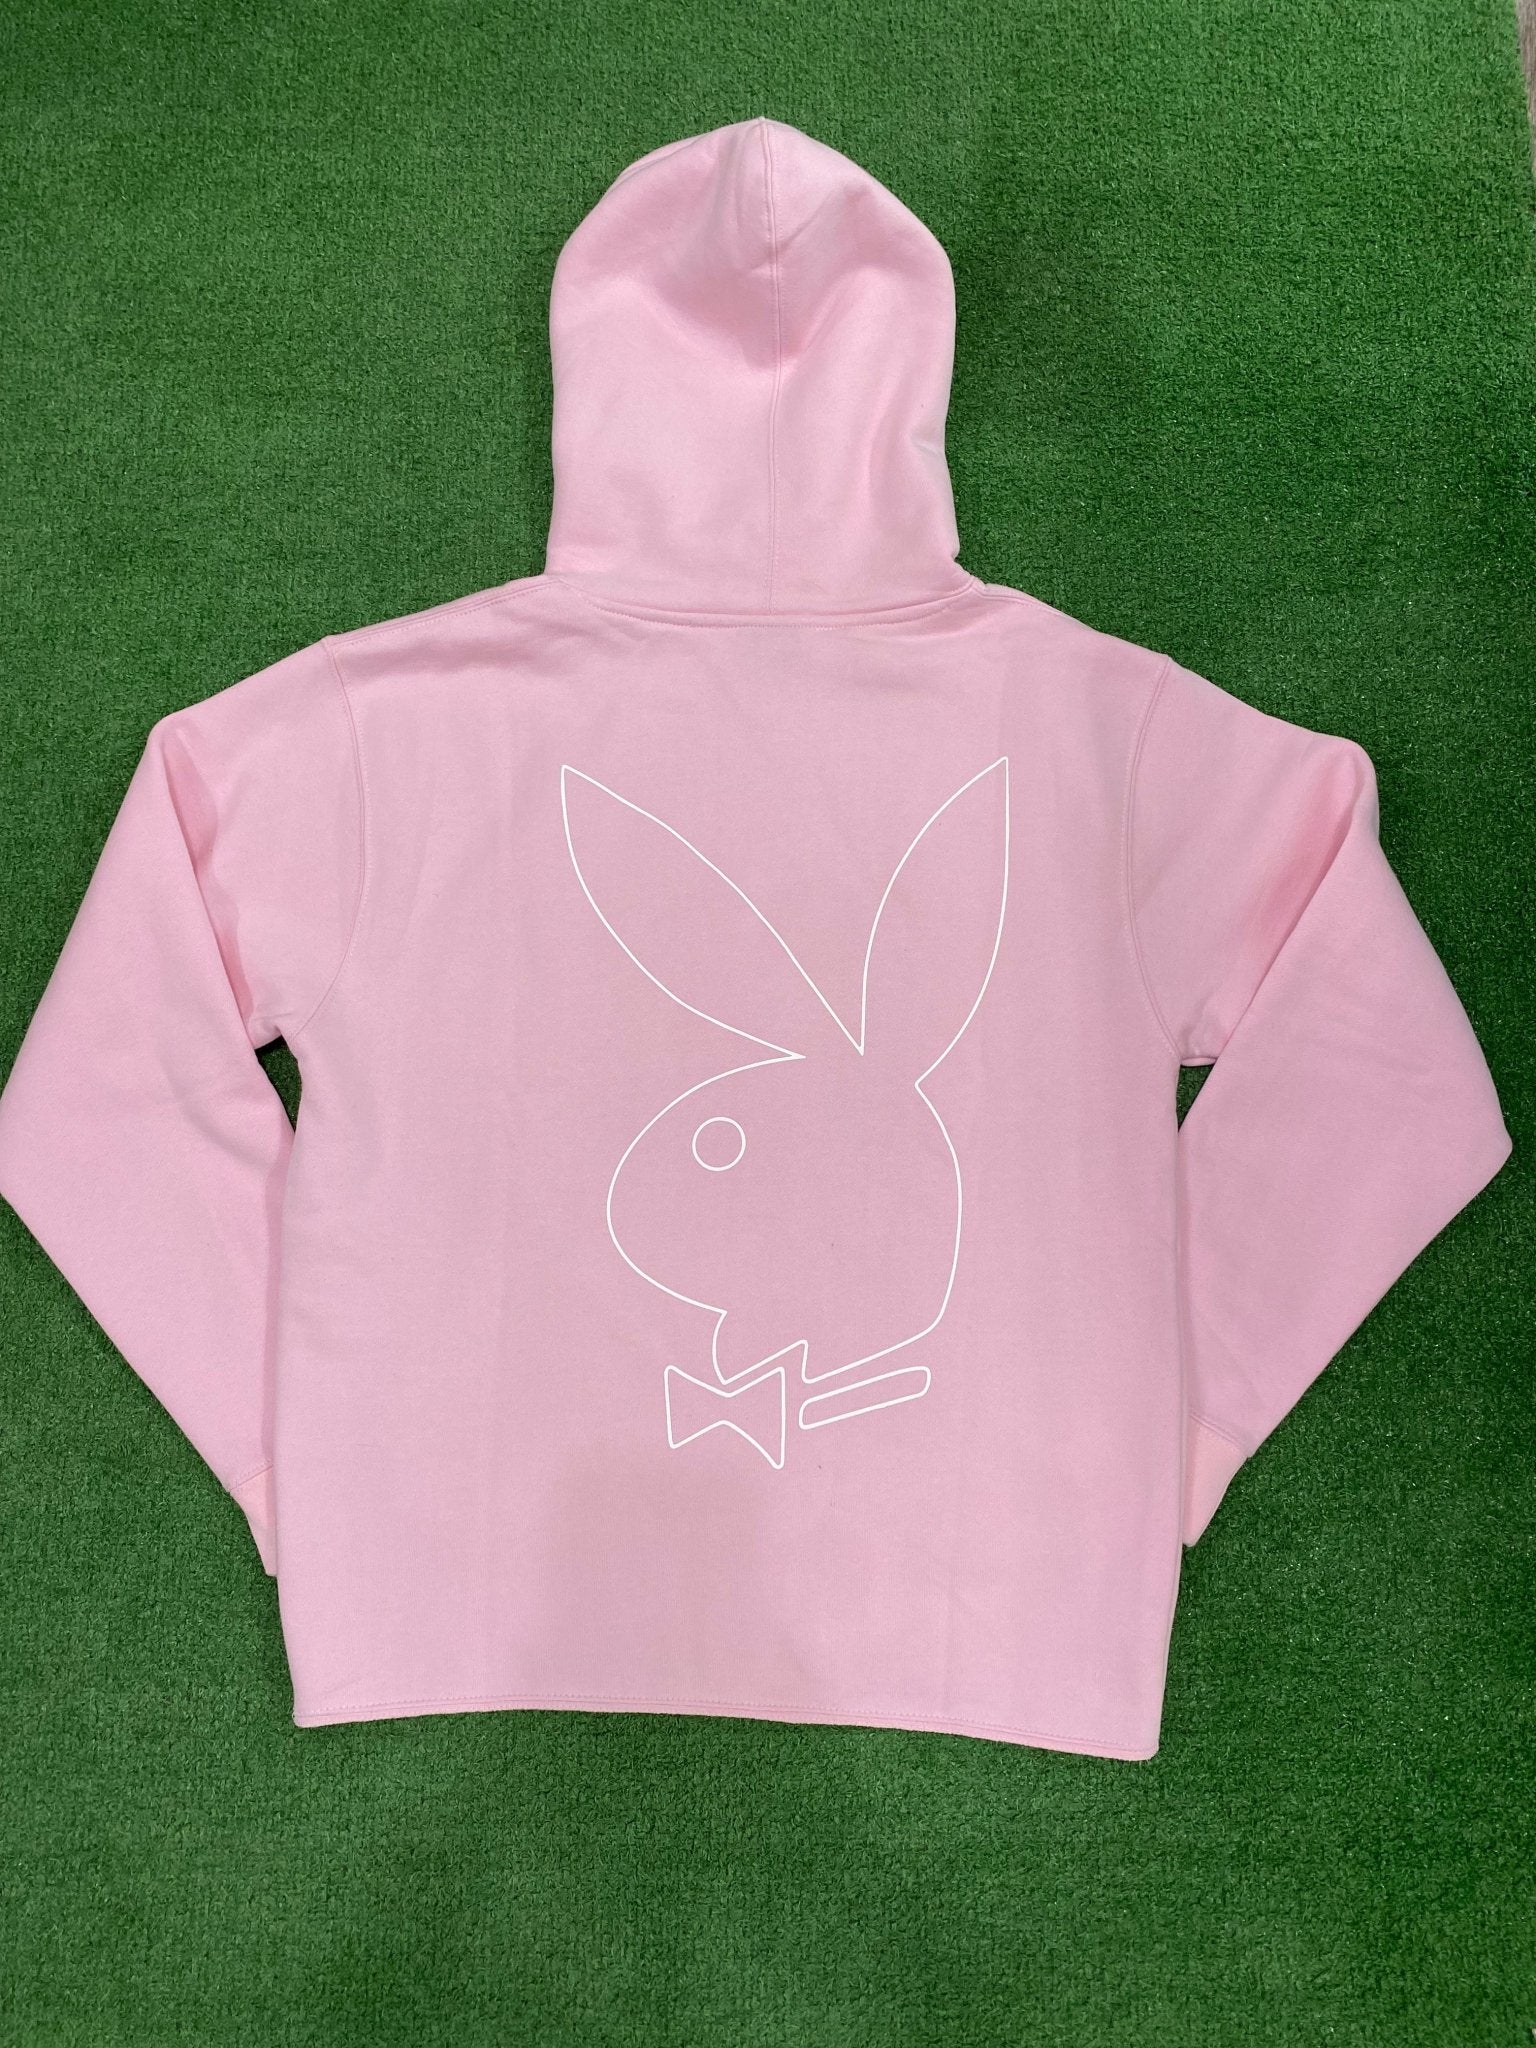 Revenge x Playboy Bunny Hoodie Pink (Gently Used) - Paroissesaintefoy Sneakers Sale Online